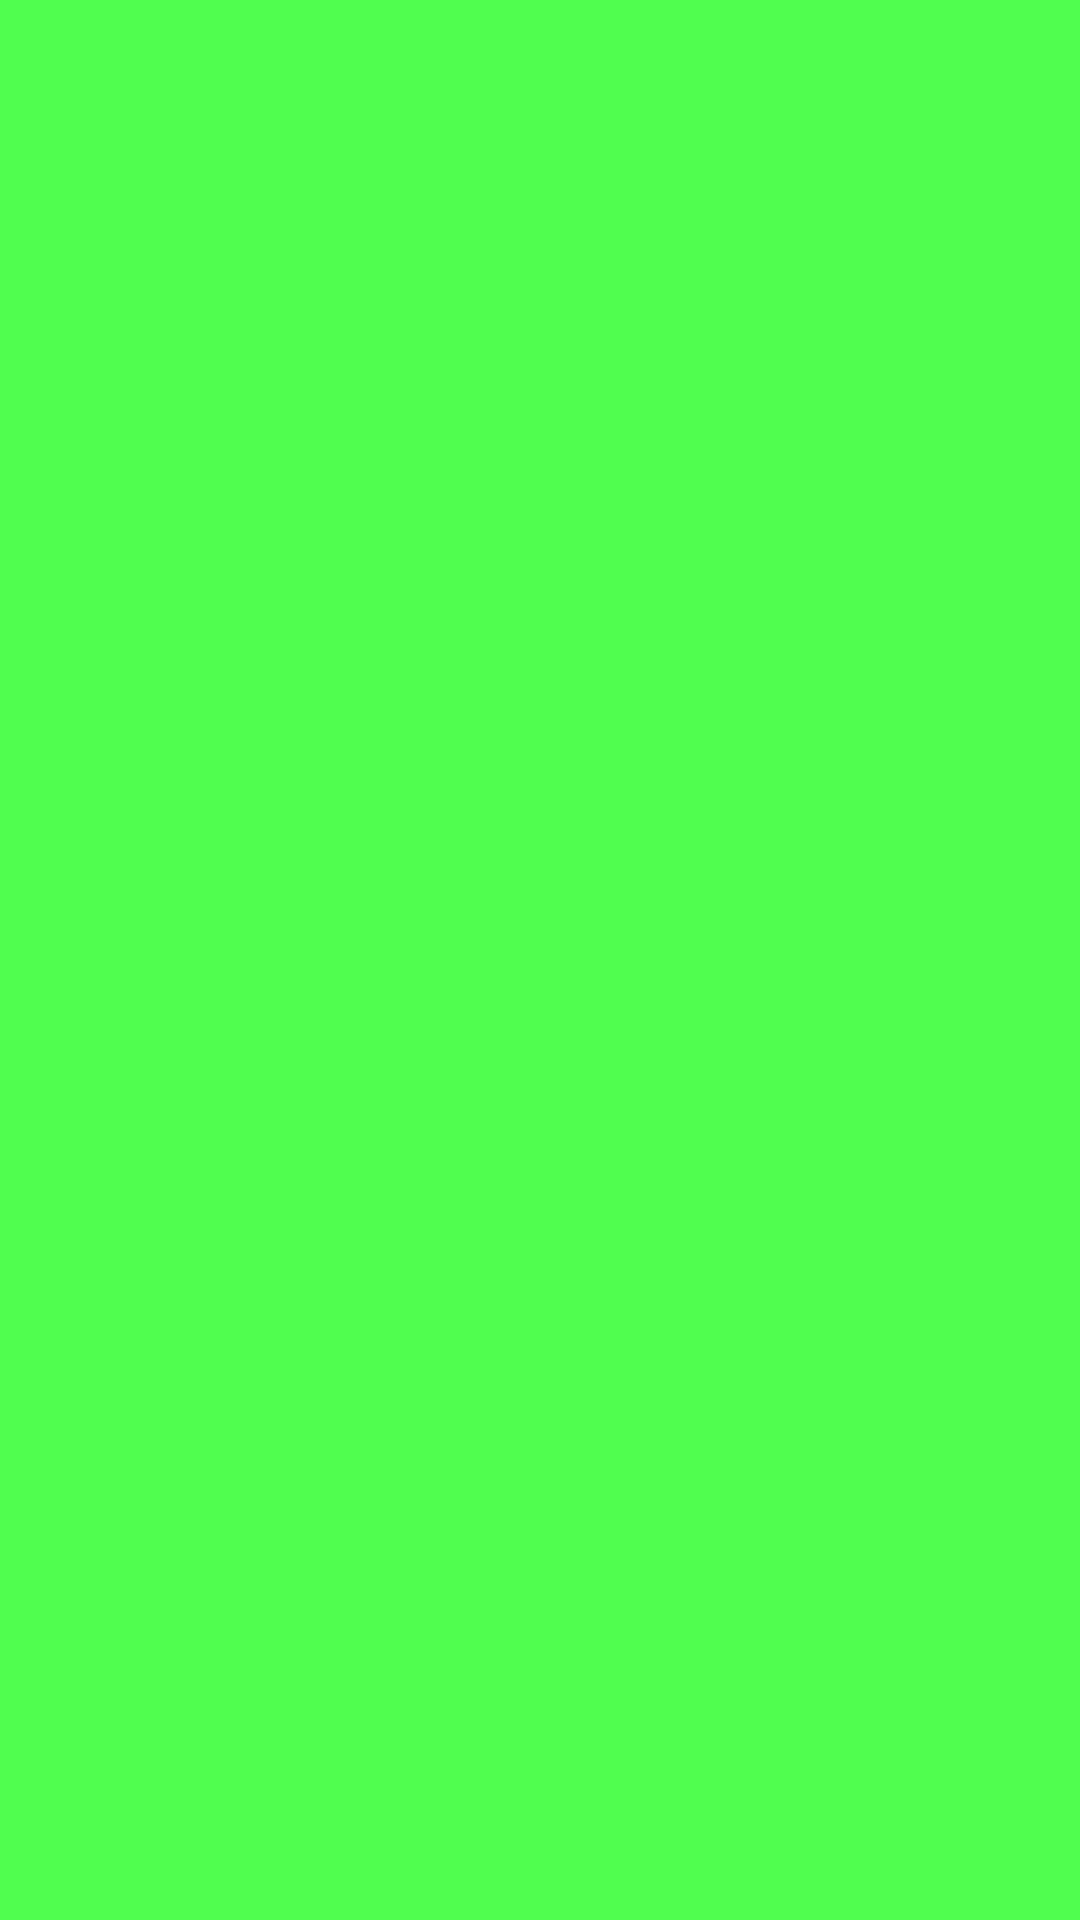 Descarga de APK de Verde. Fondos de color verde para Android